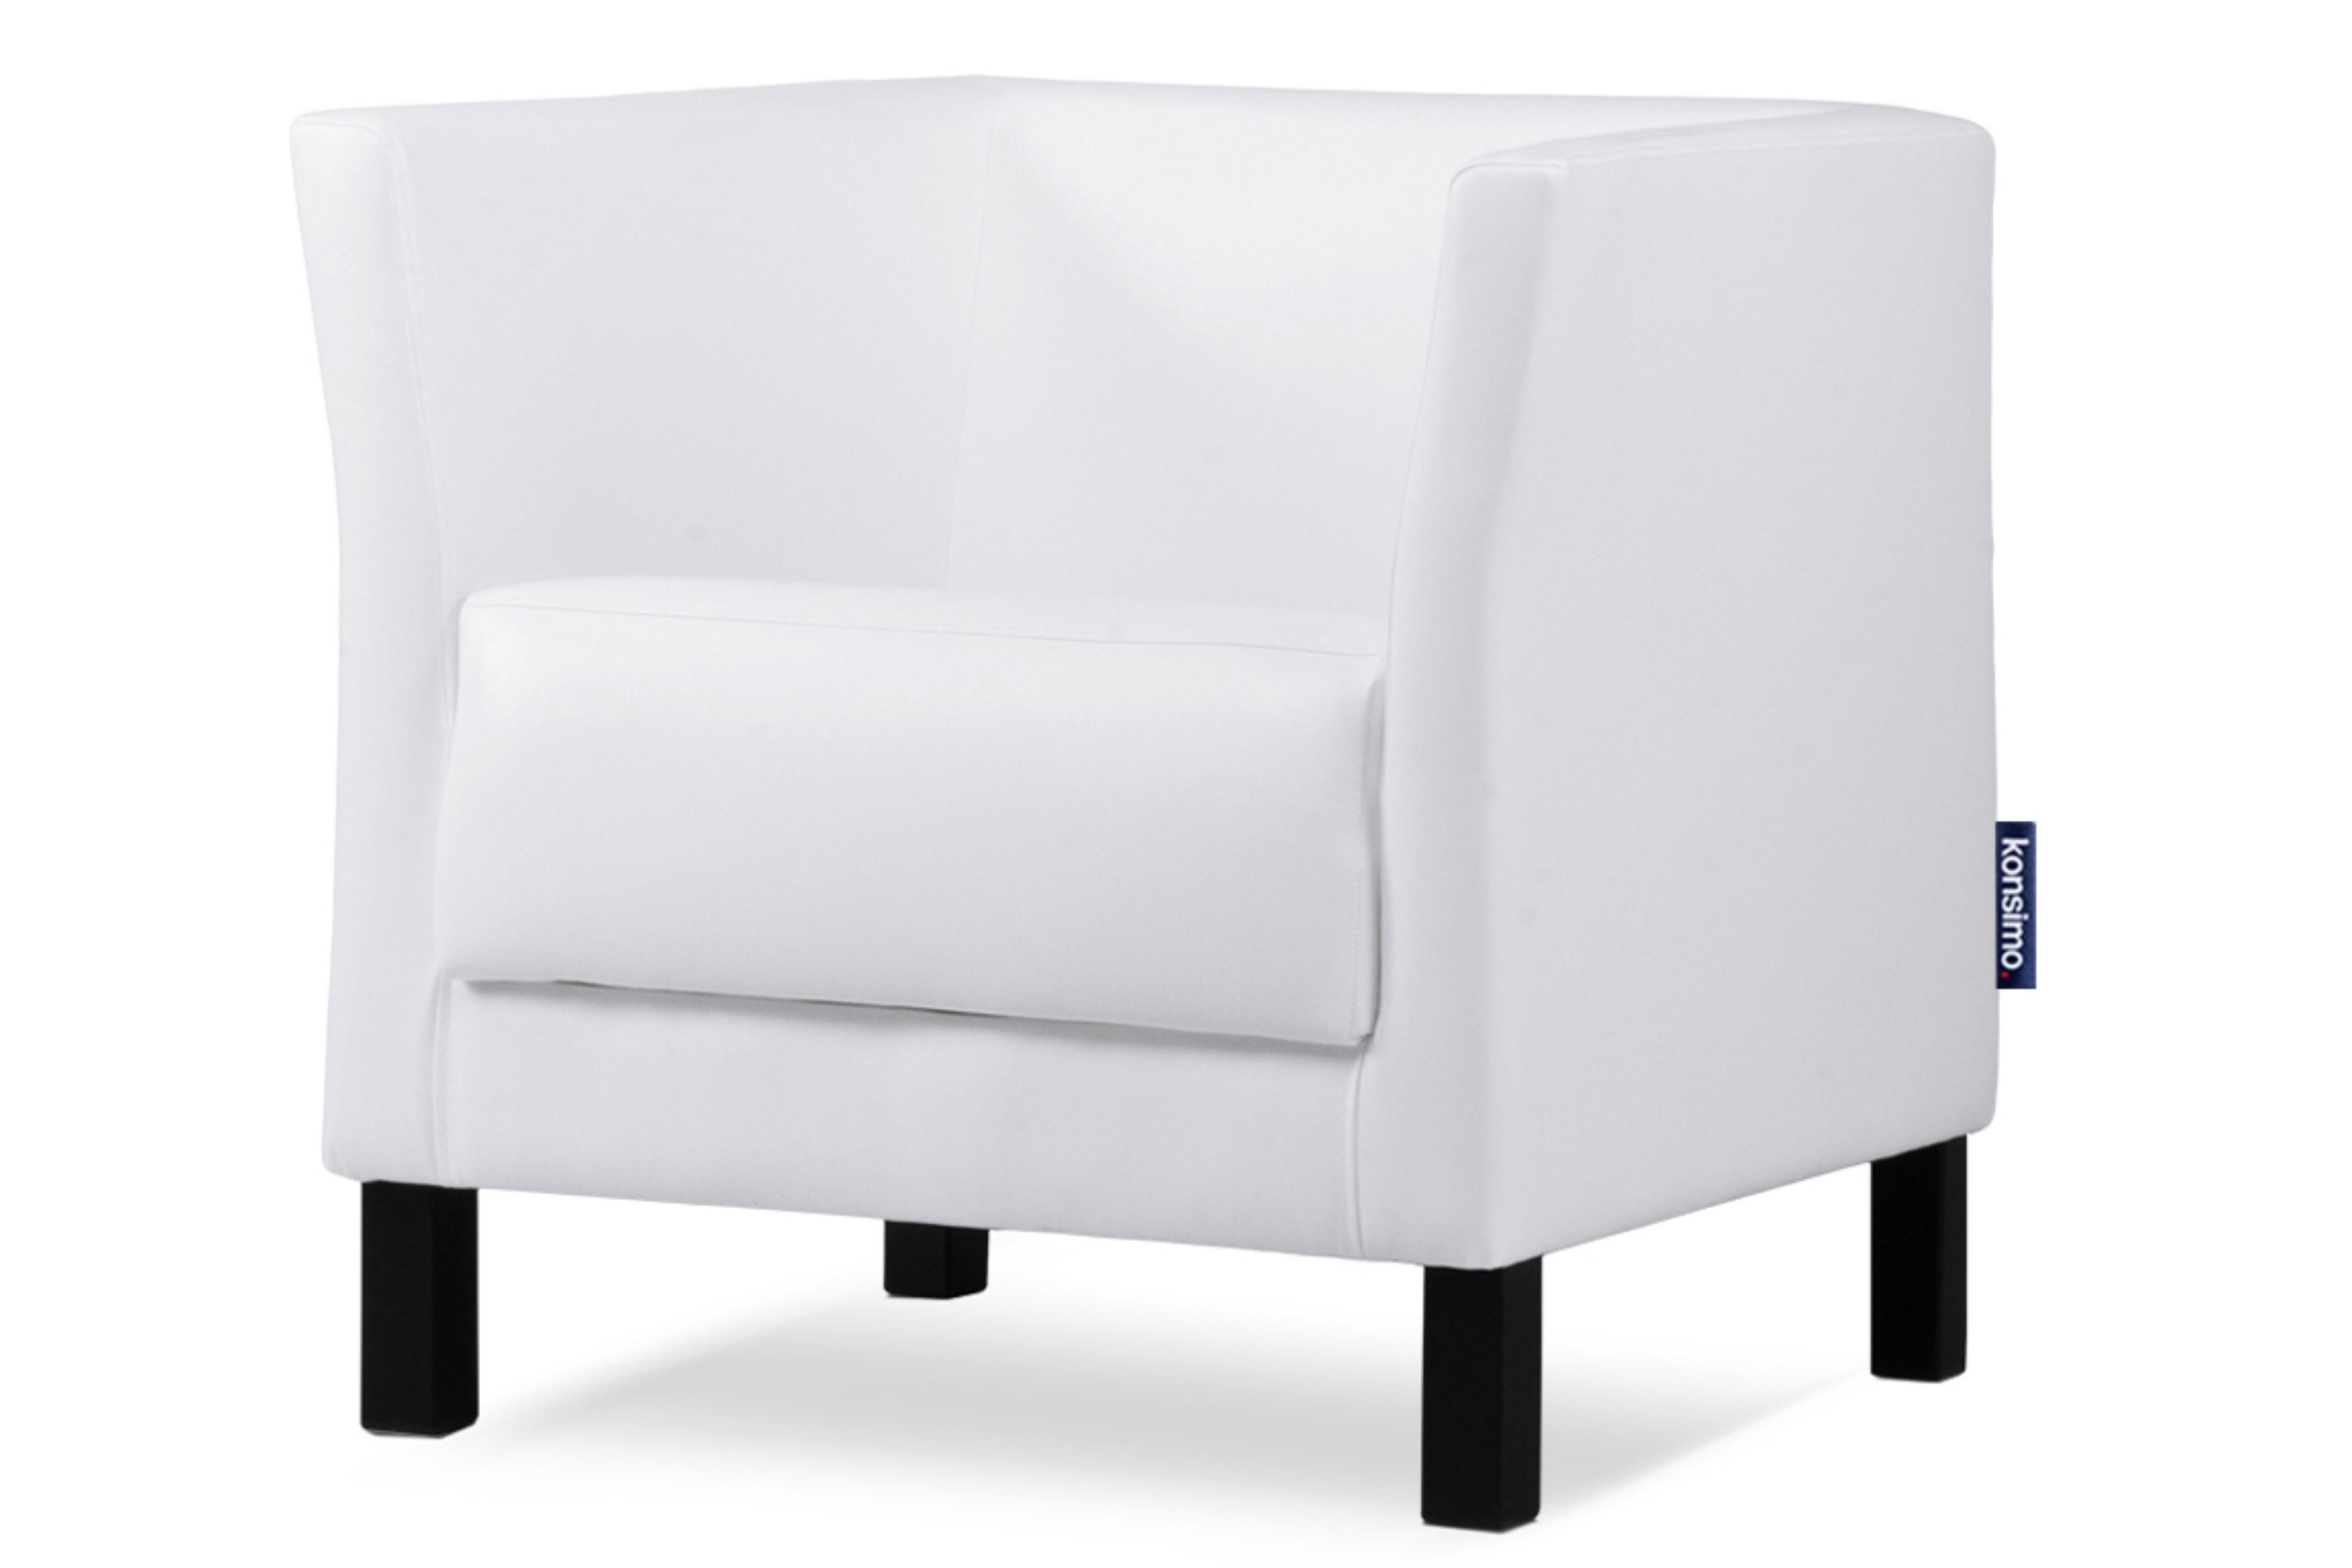 Konsimo Sessel ESPECTO Sessel, hohe Massivholzbeine, weiche Sitzfläche und hohe Rückenlehne, Kunstleder weiß | weiß | weiß